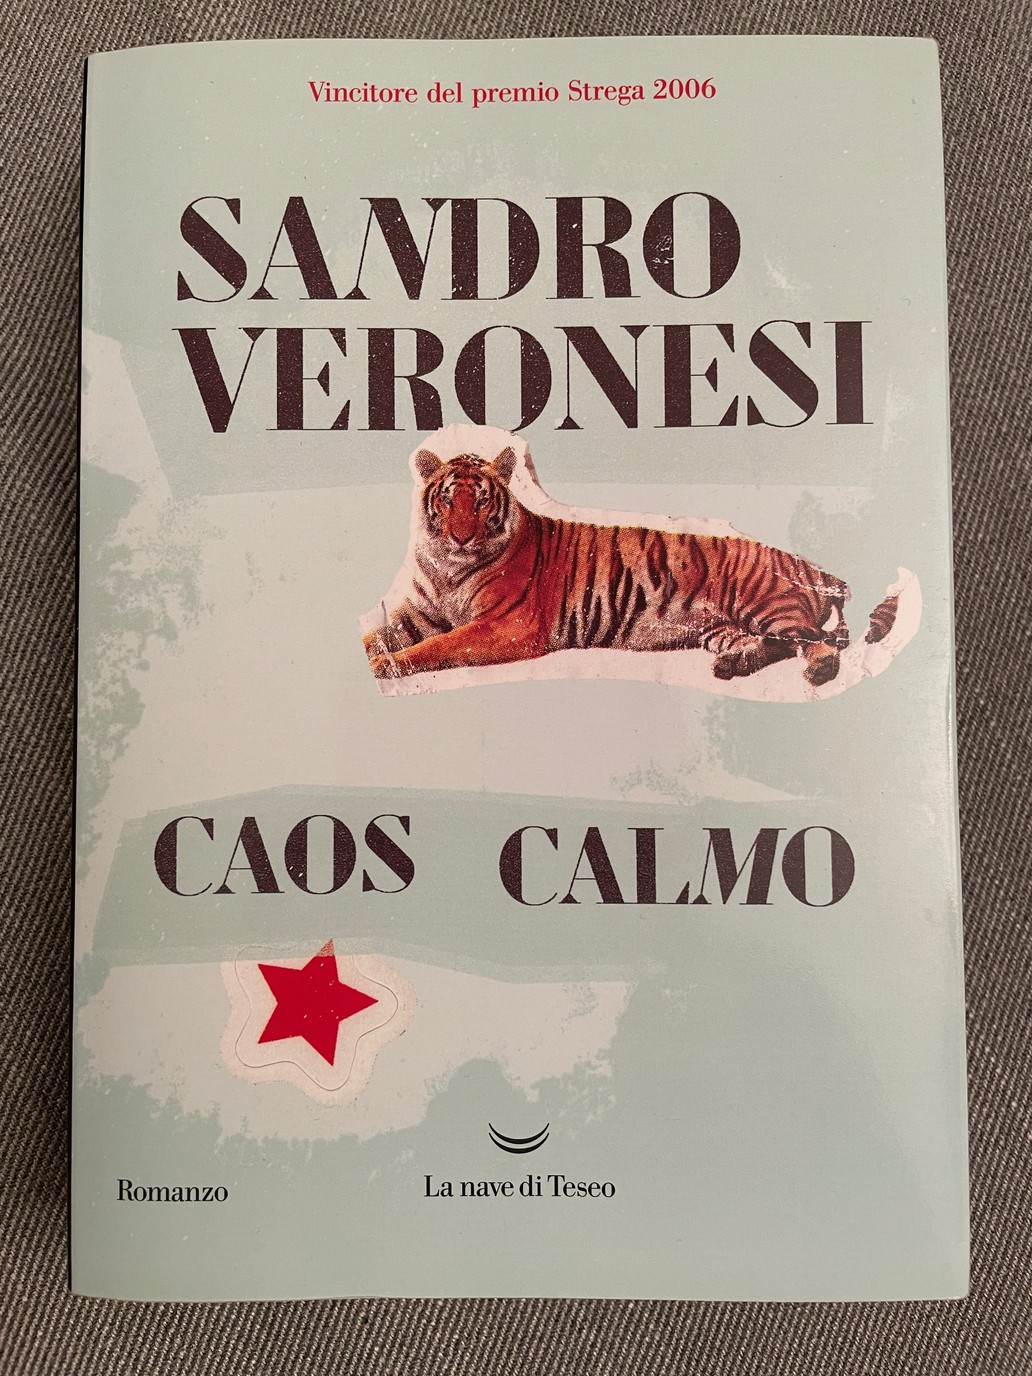 Copertura del libro Caos Calmo di Sandro Veronesi.